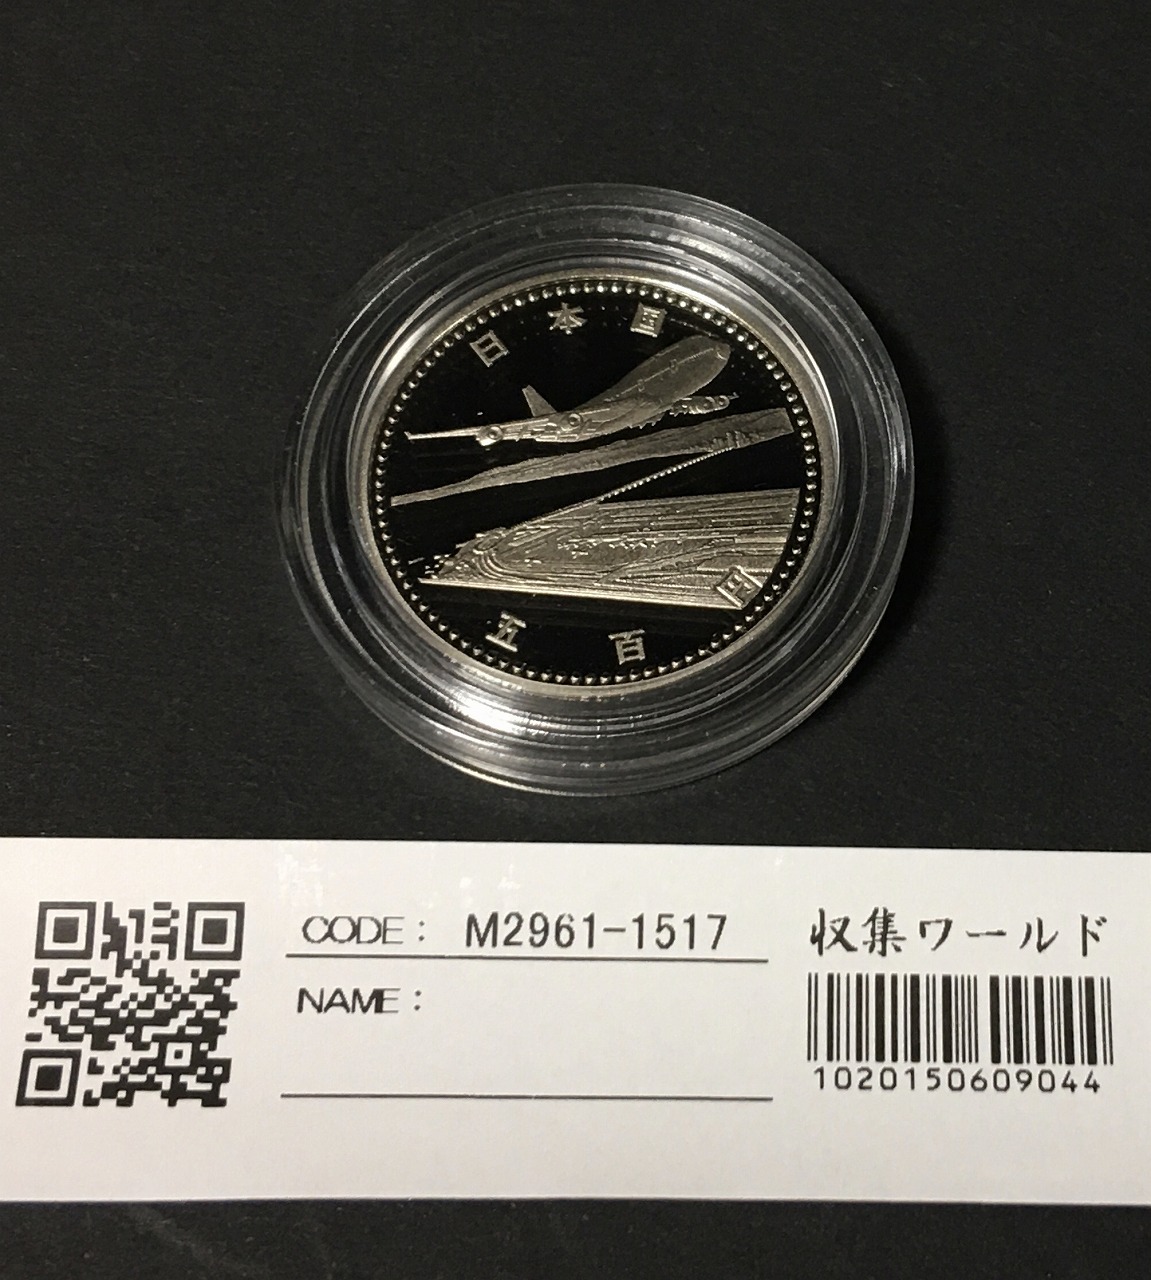 関西国際空港開港記念 500円白銅プルーフ貨 1994年(H6) 未使用-カプセル入